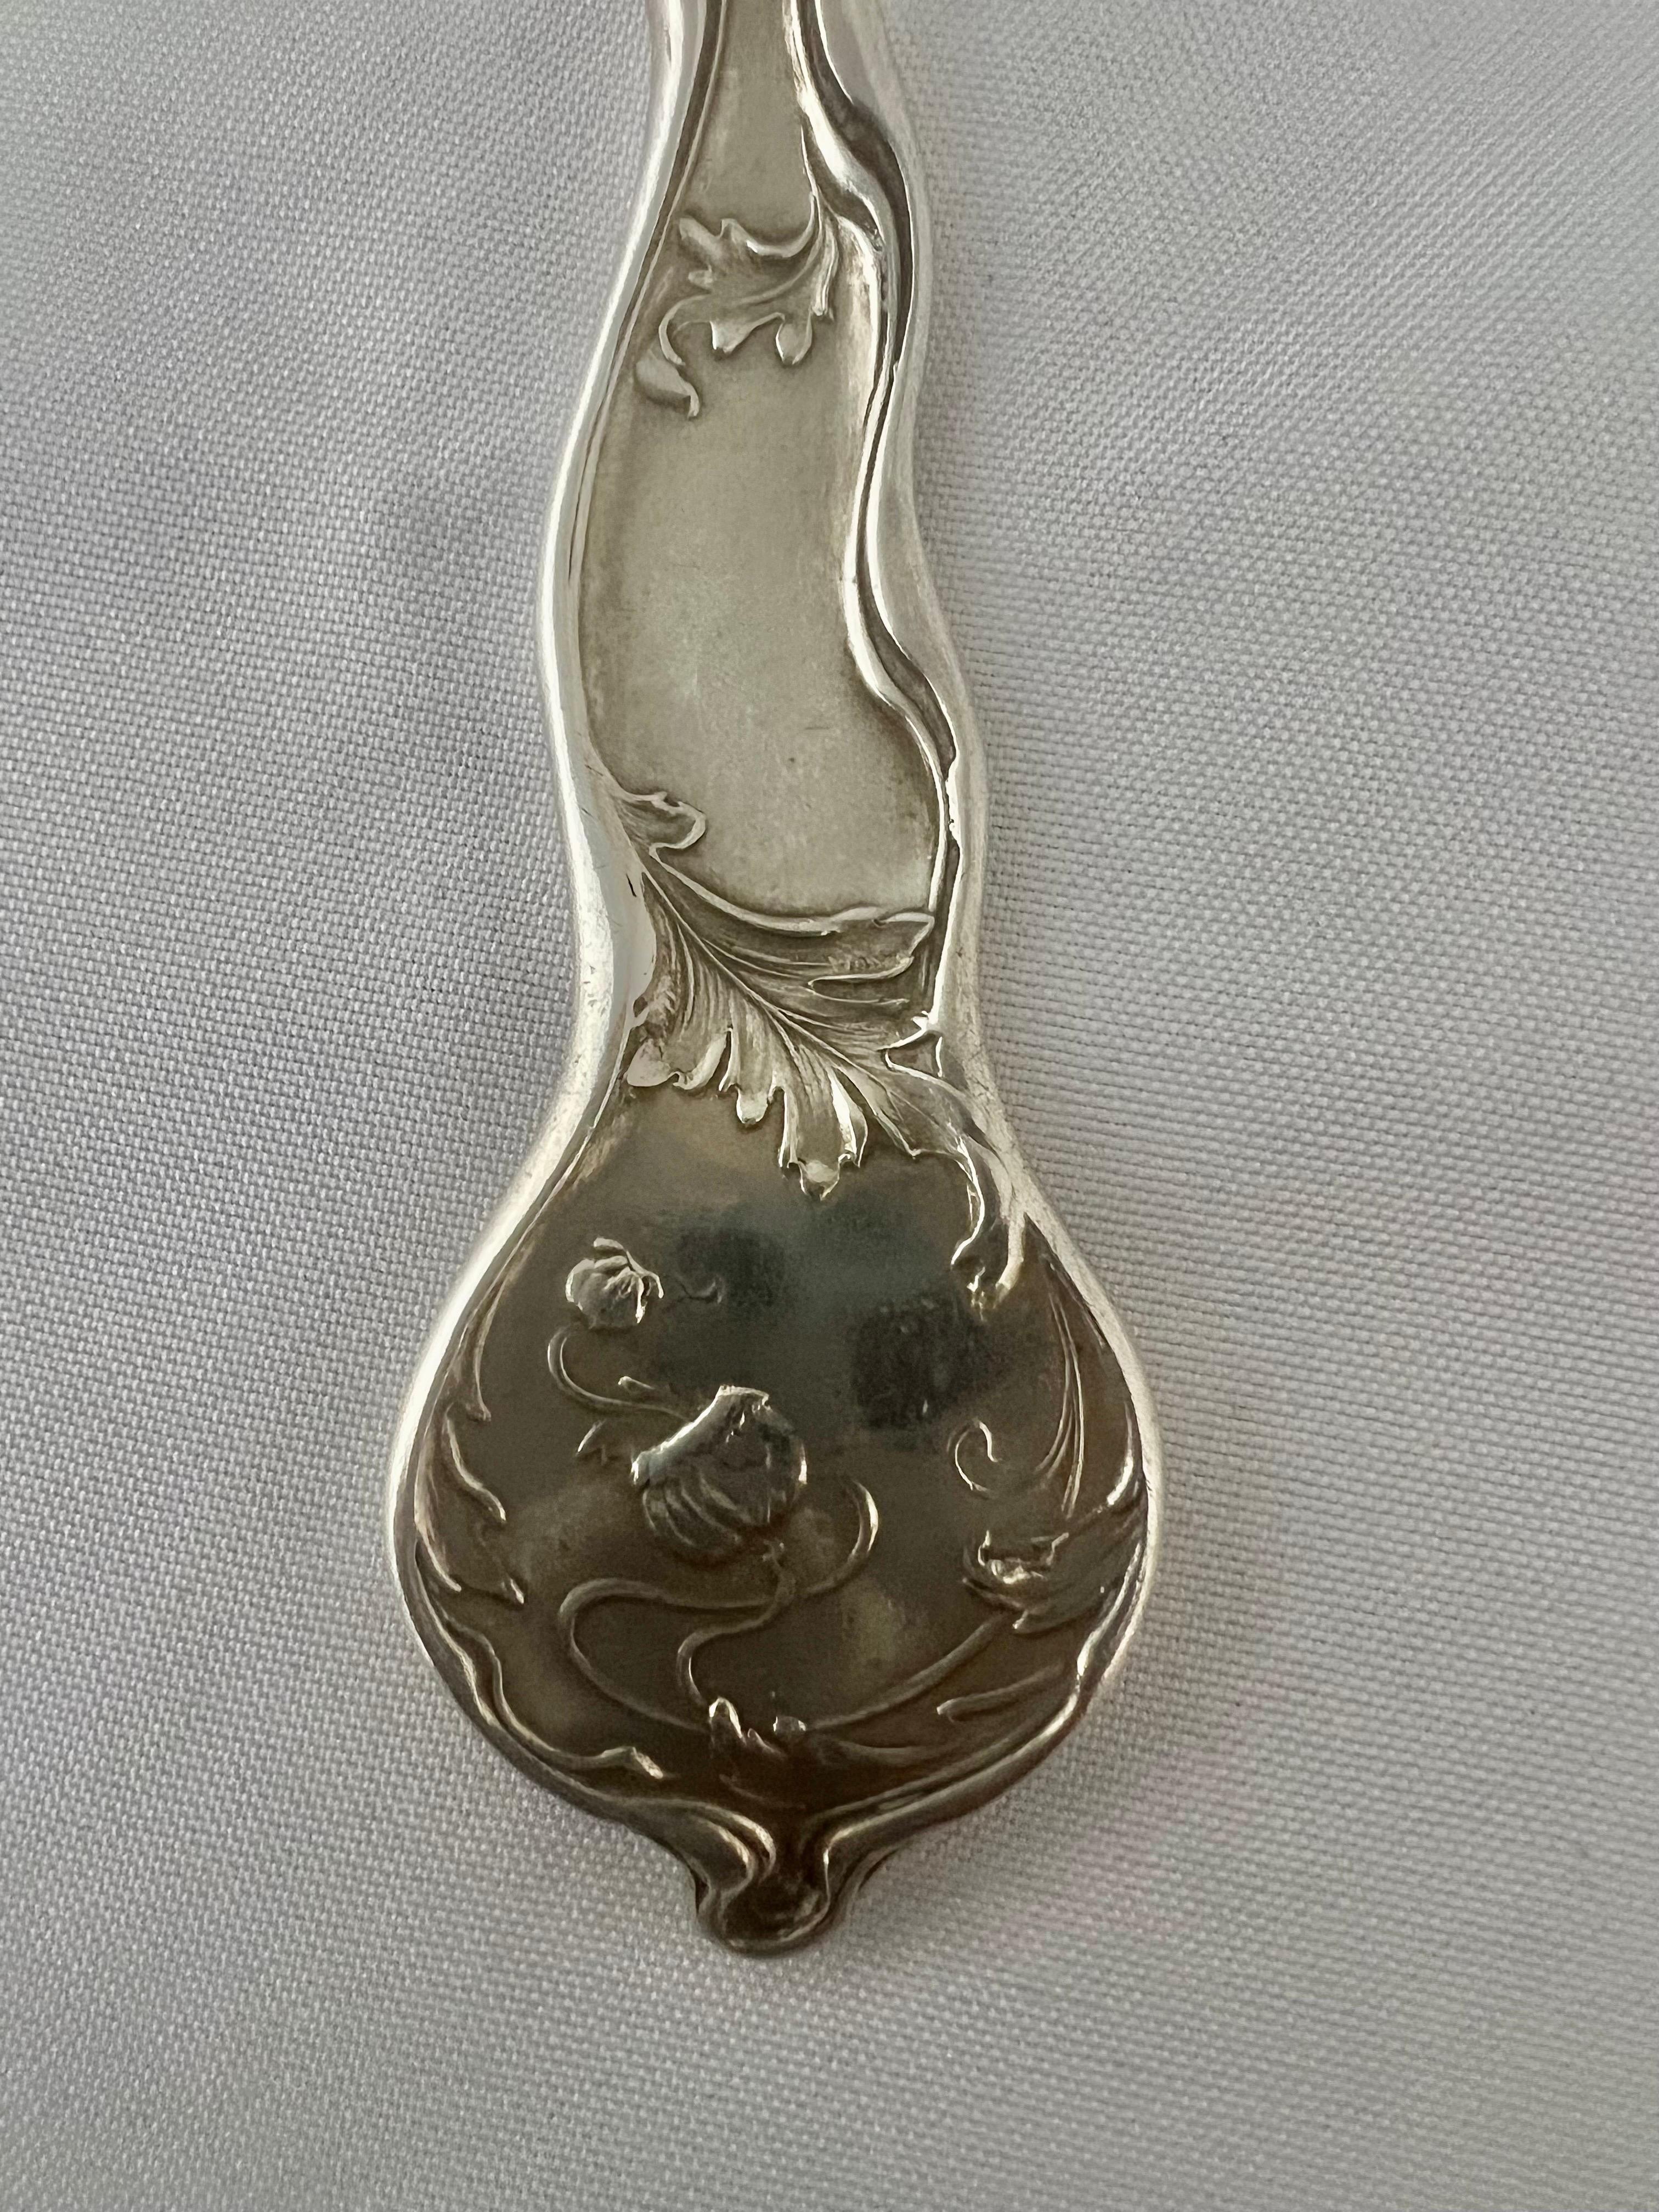 20th Century Art Nouveau Serving Spoon, George W. Shiebler & Co. For Sale